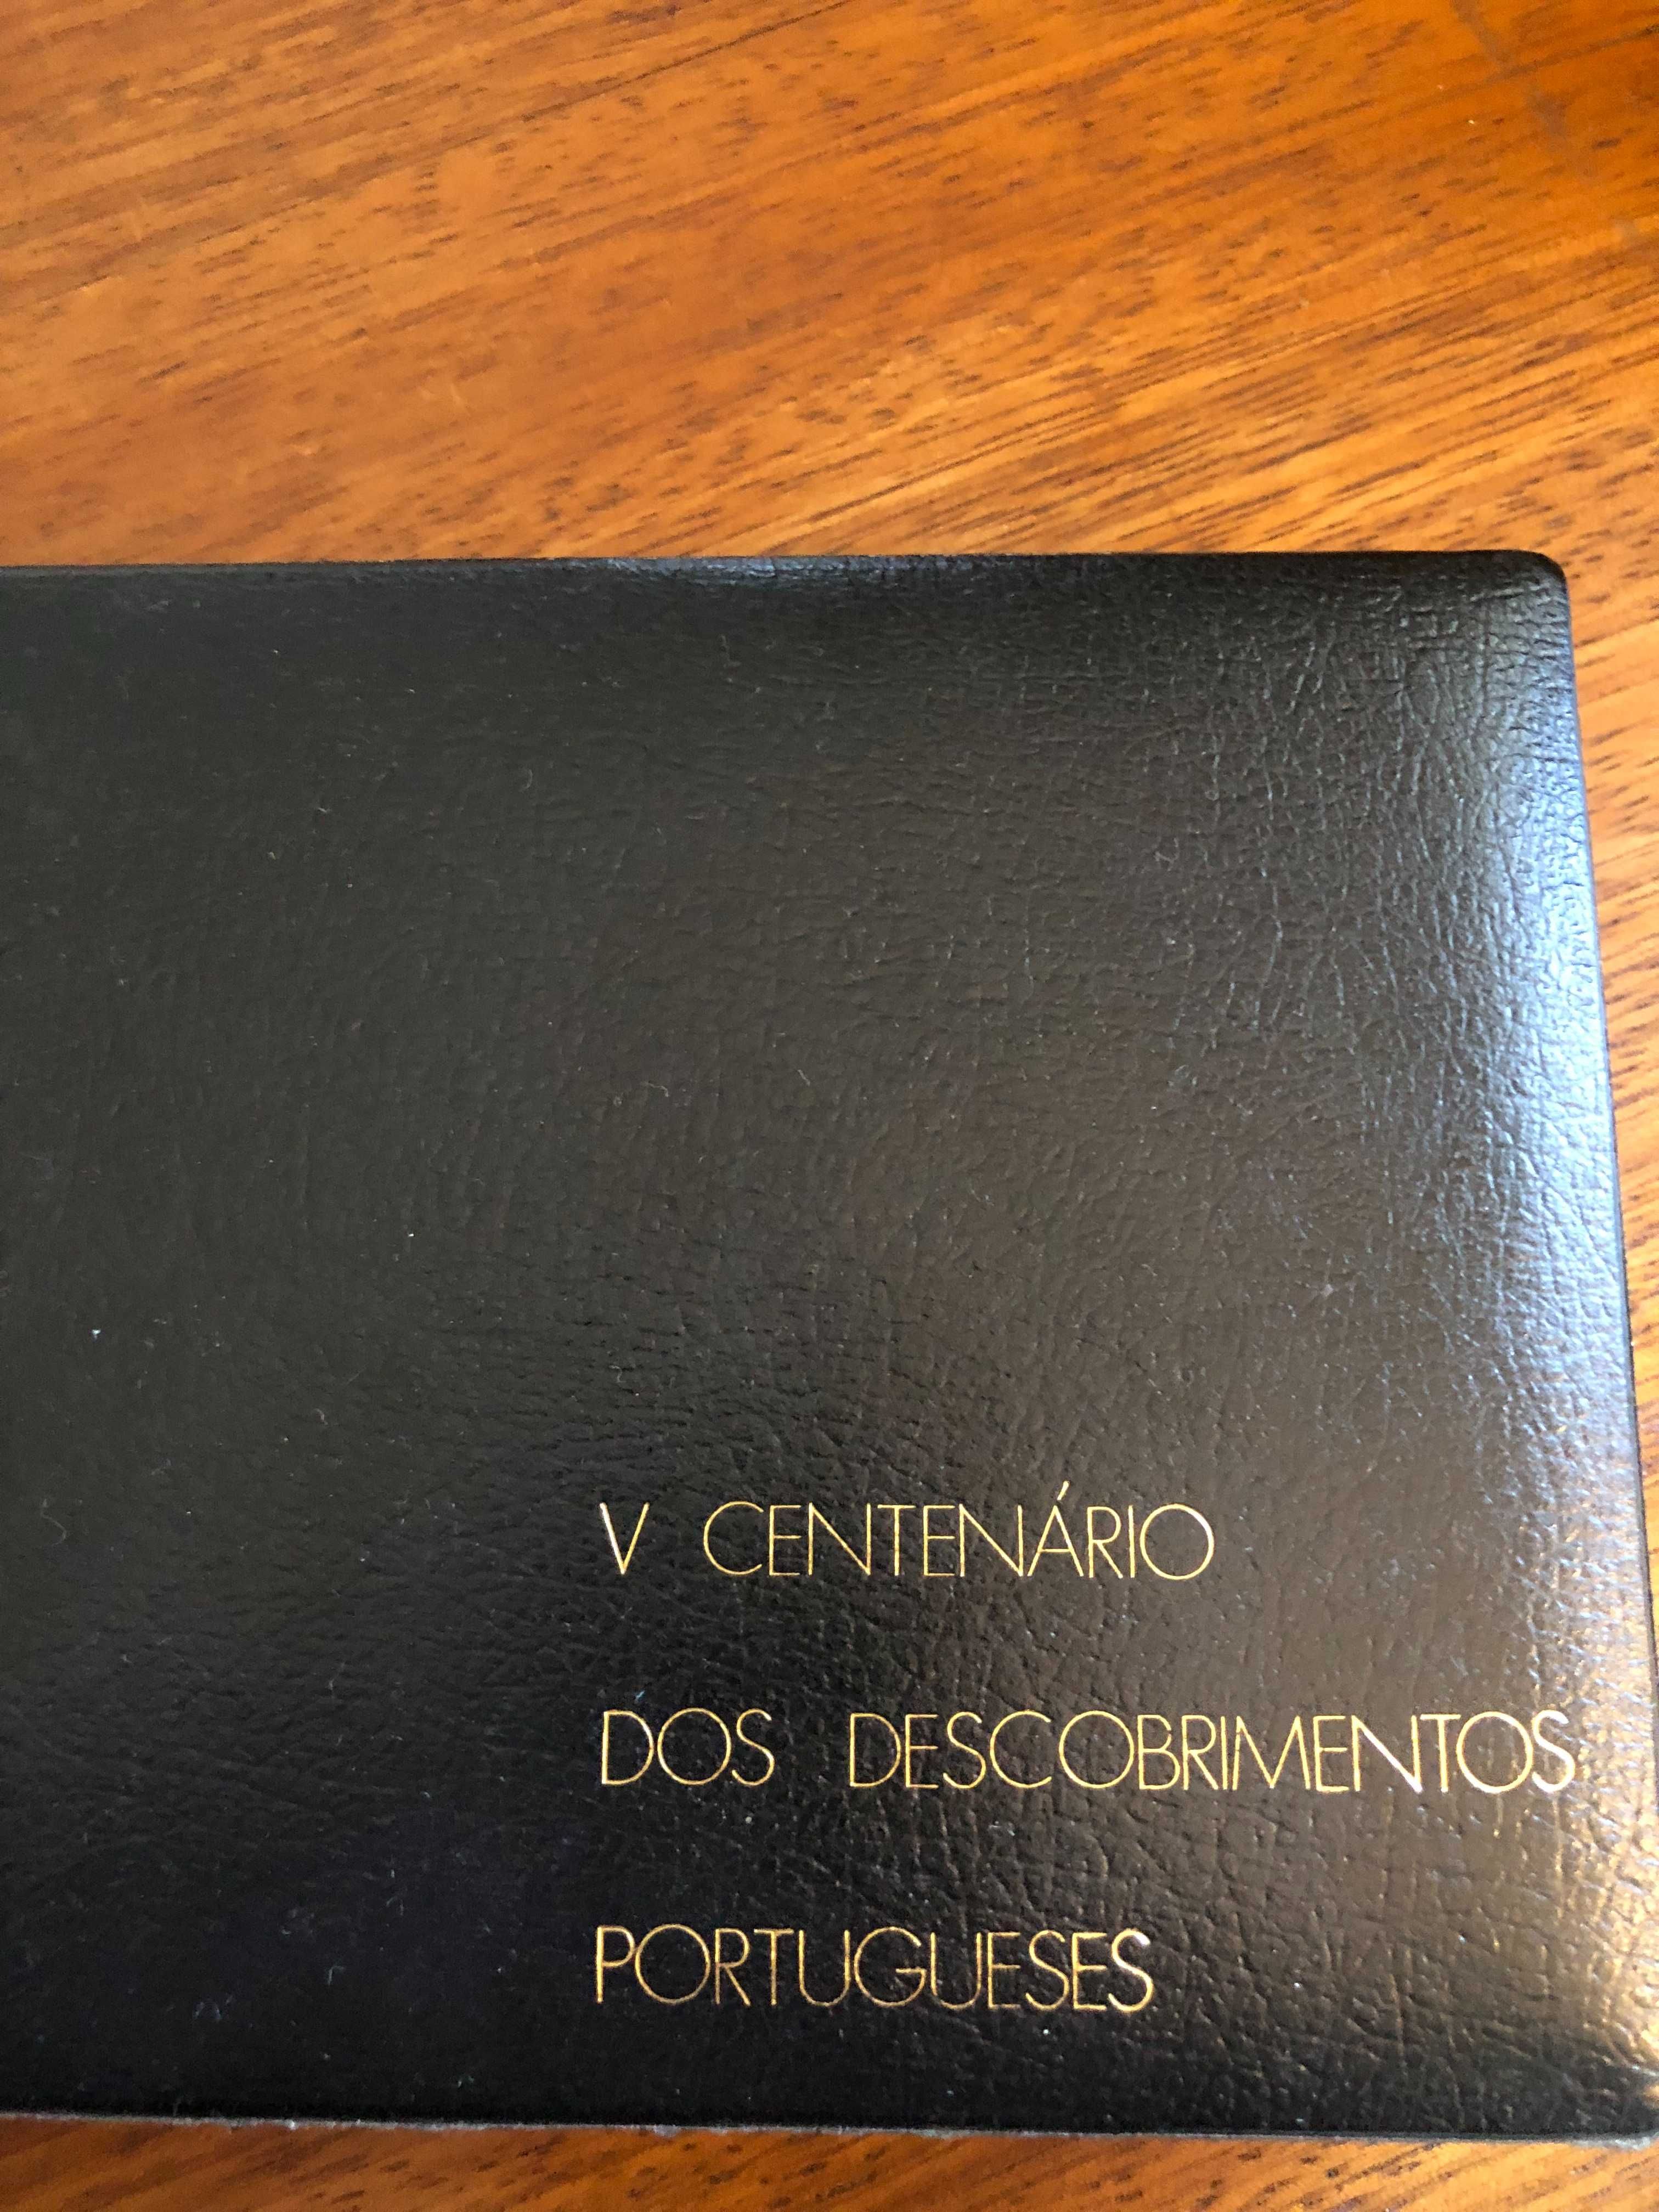 Estojo Comemorativo V Centenário dos Descobrimentos Portugueses